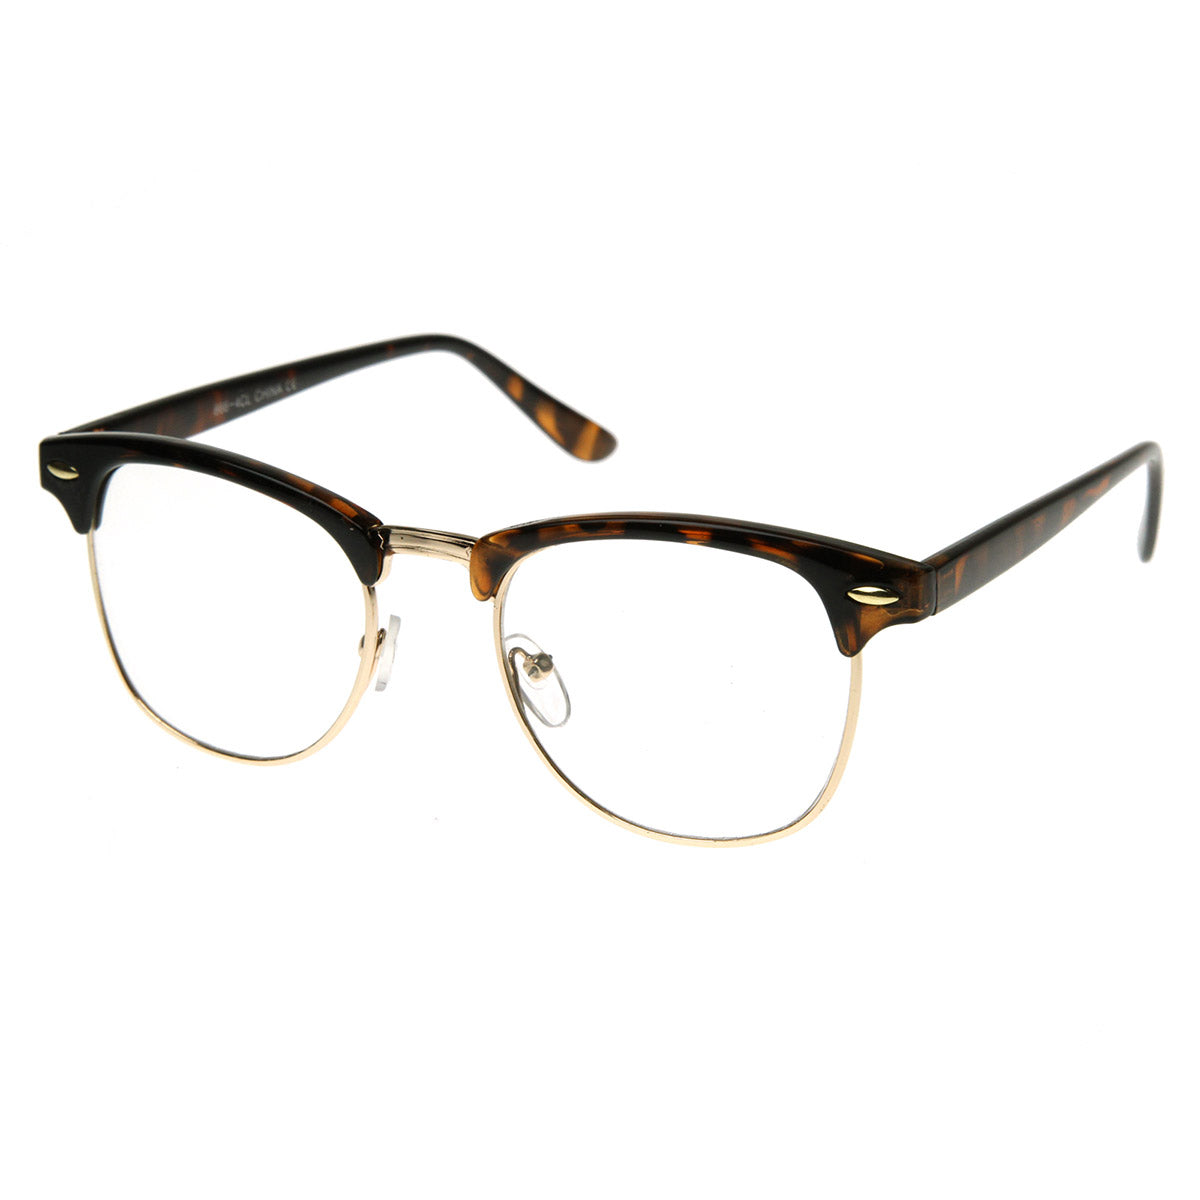 Designer Cat-Eye Glasses Brown Frame, Horn Rimmed Glasses